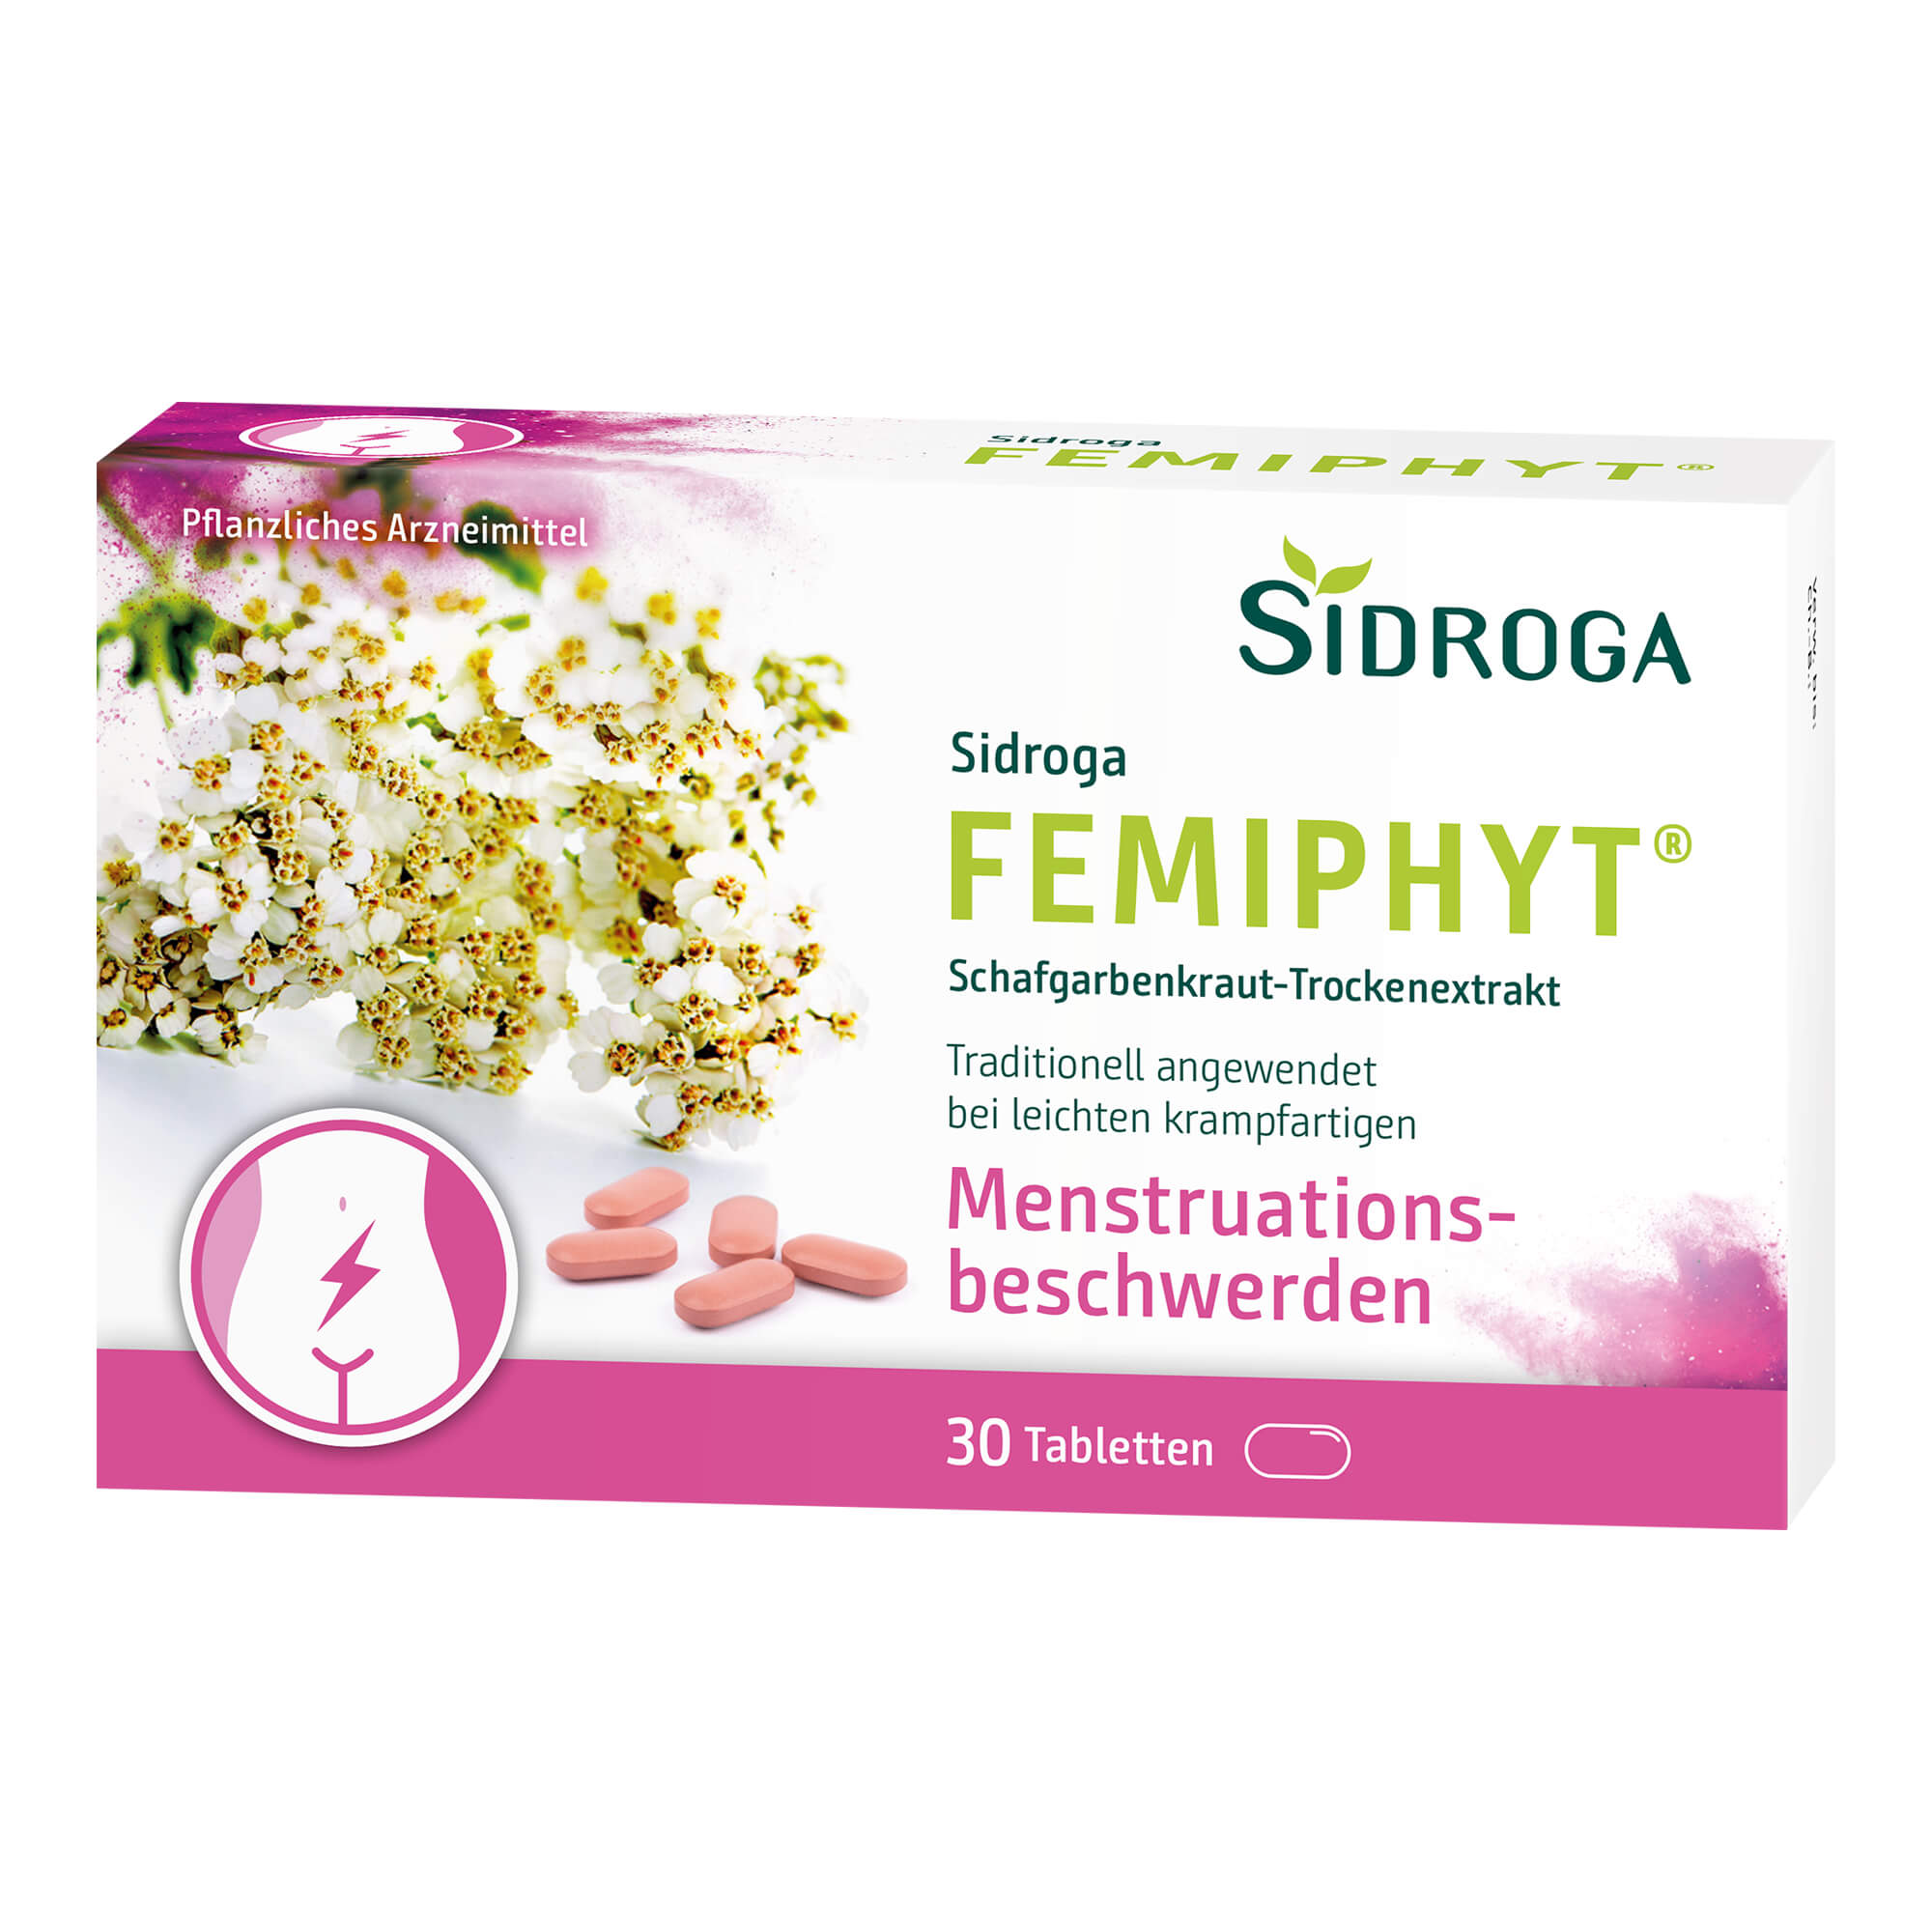 Pflanzliches Arzneimittel bei leichten krampfartigen Menstruationsbeschwerden.